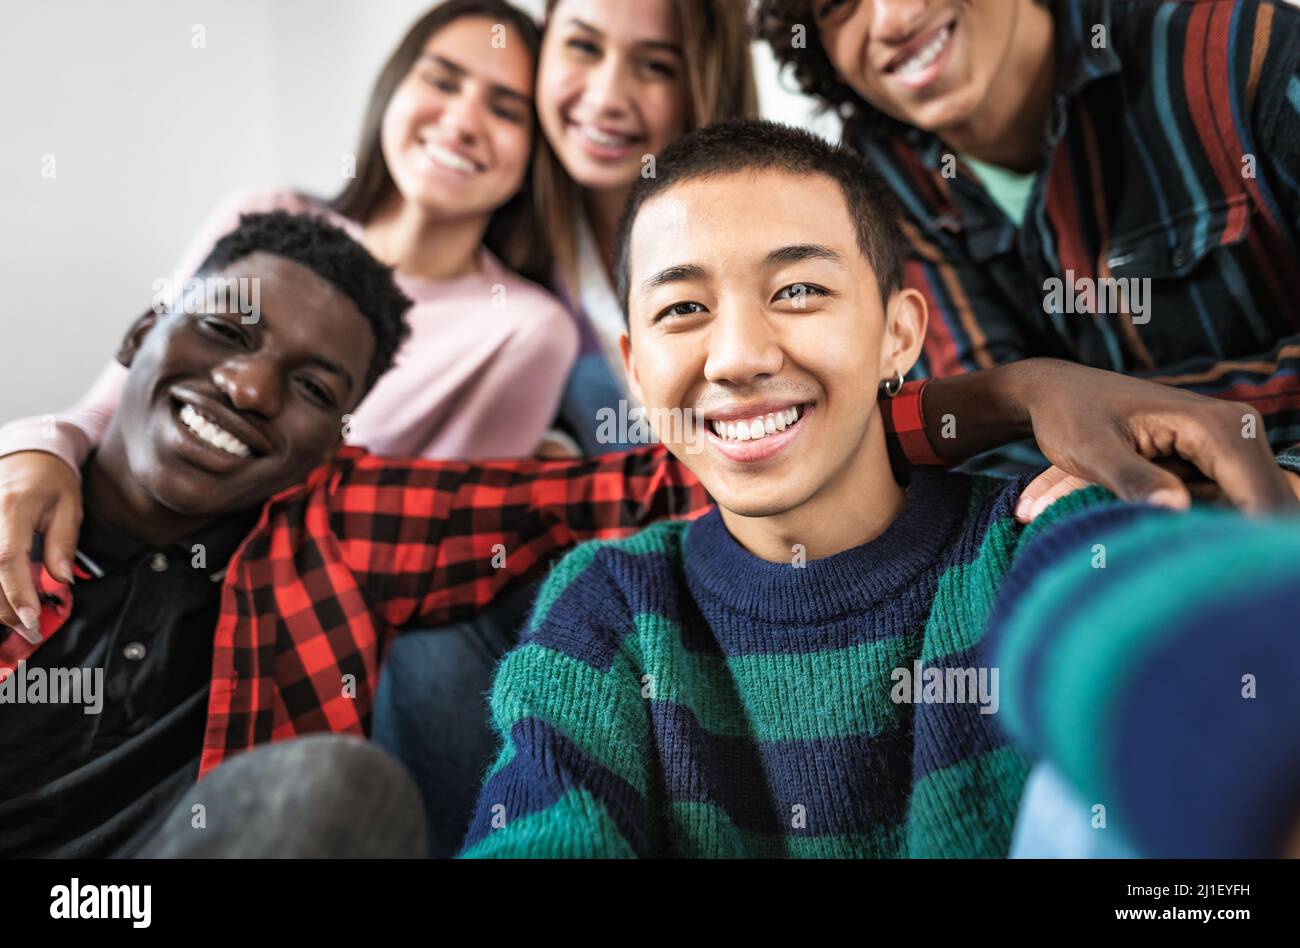 Junge multirassische Freunde nehmen gemeinsam Selfie - Freundschafts- und Diversitätskonzept Stockfoto